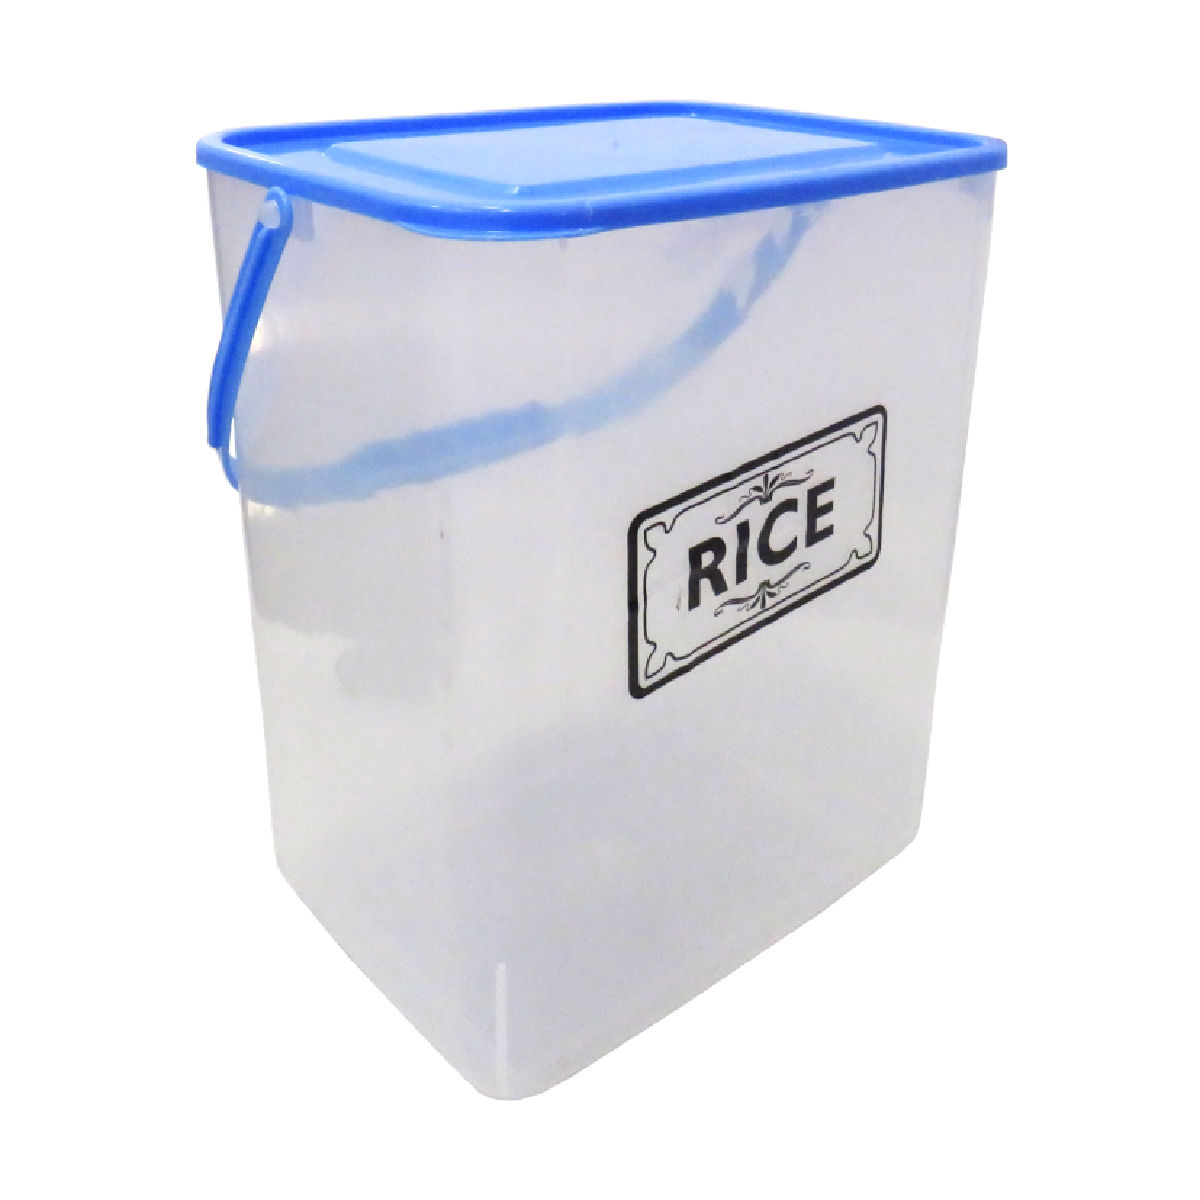 Formosa Plastics, 8127 Rice Container